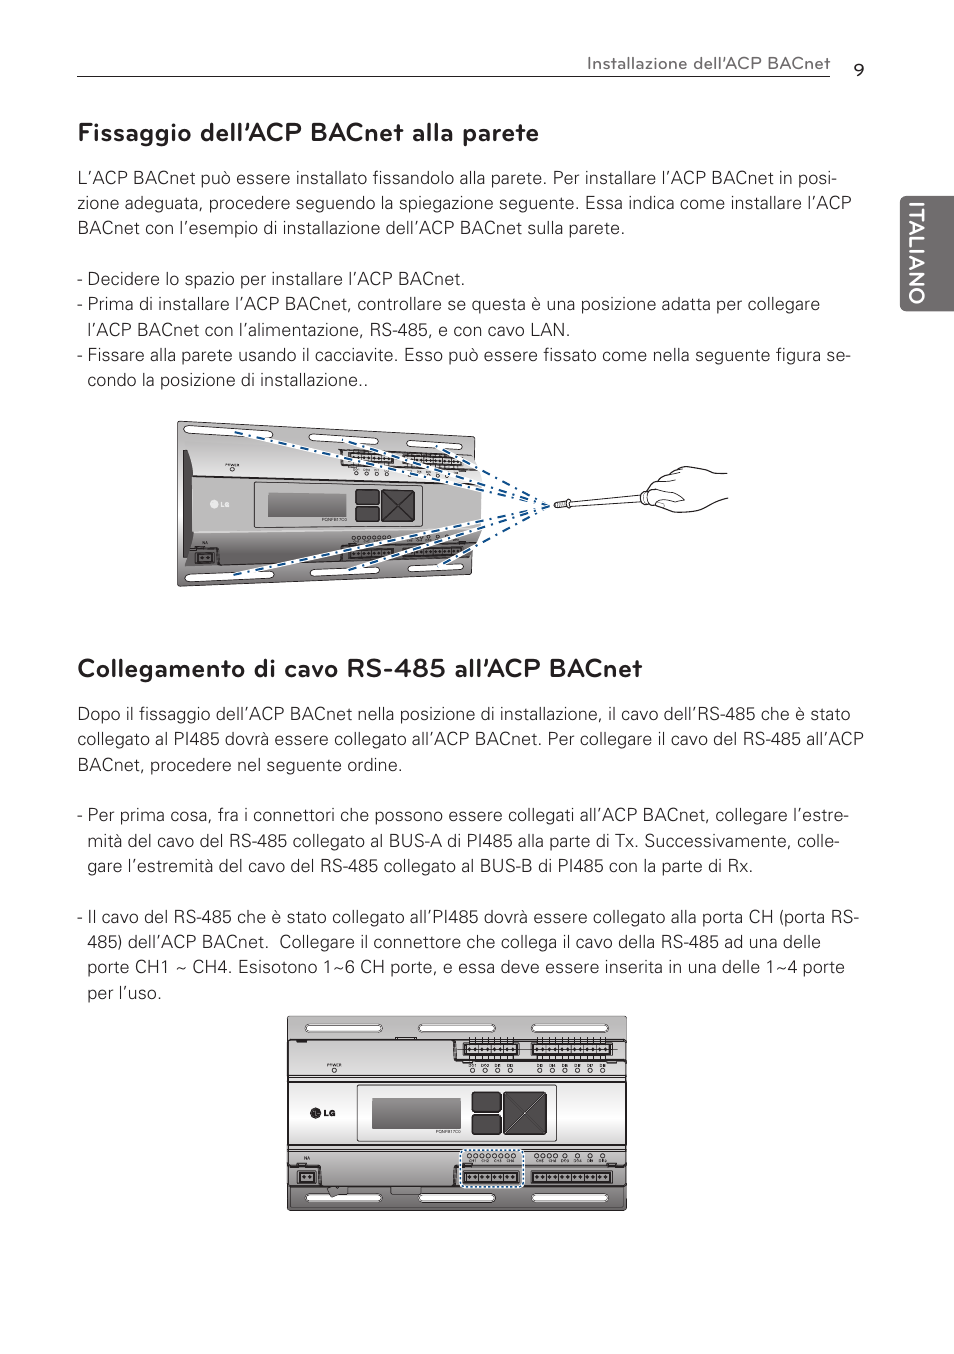 Fissaggio dell’acp bacnet alla parete, Collegamento di cavo rs-485 all’acp bacnet, It aliano | LG PQNFB17C0 User Manual | Page 21 / 109